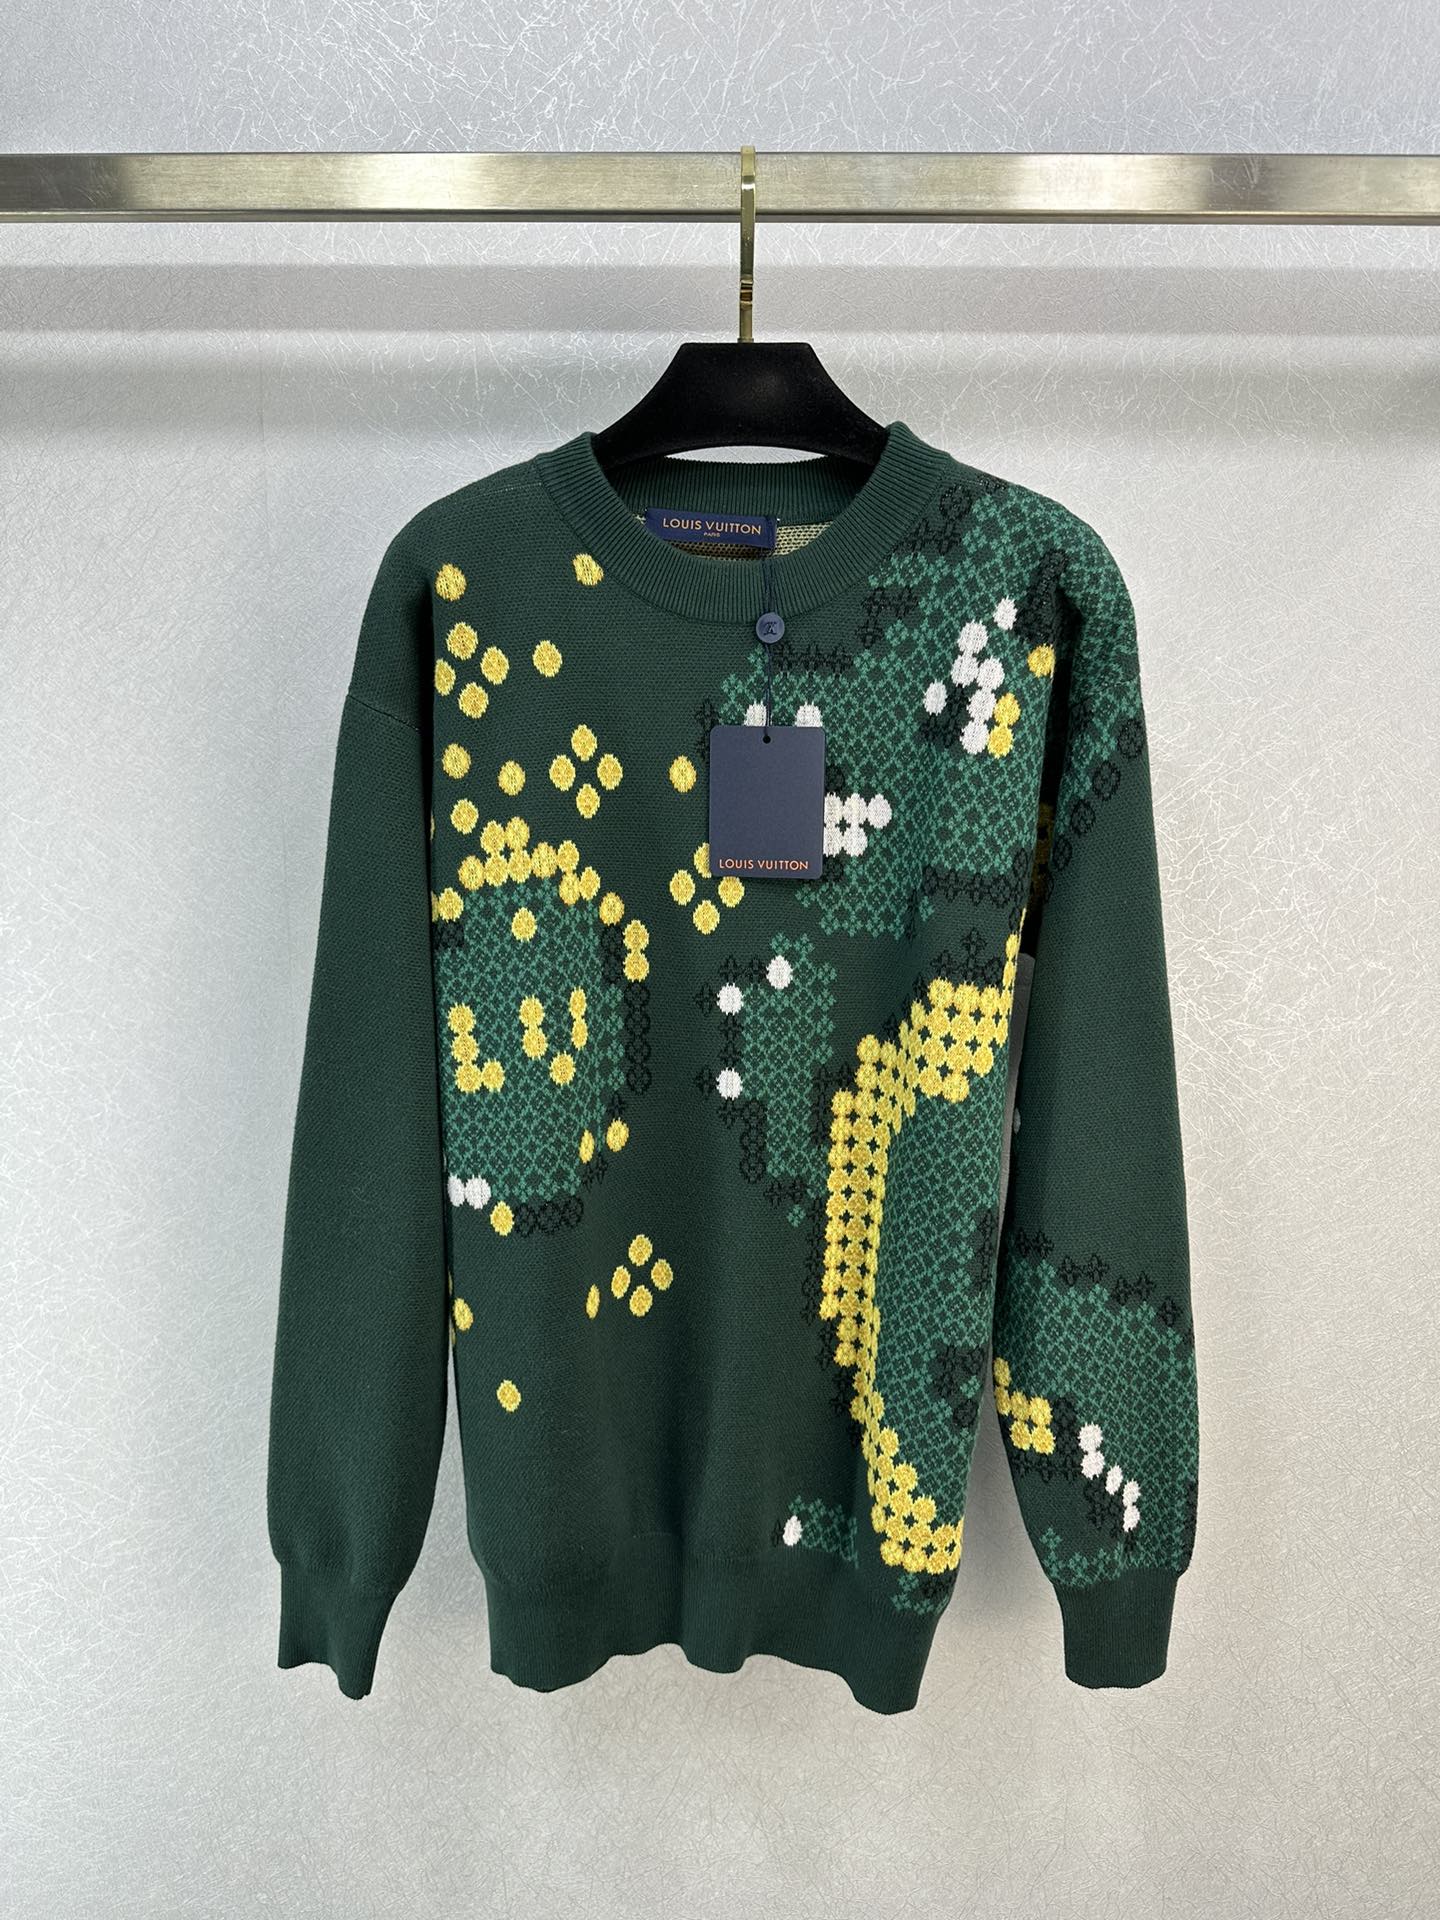 2023新登場のルイヴィトン長袖セーターn級品 編み上げのトップス  緑と黄色の配色が魅力的_1